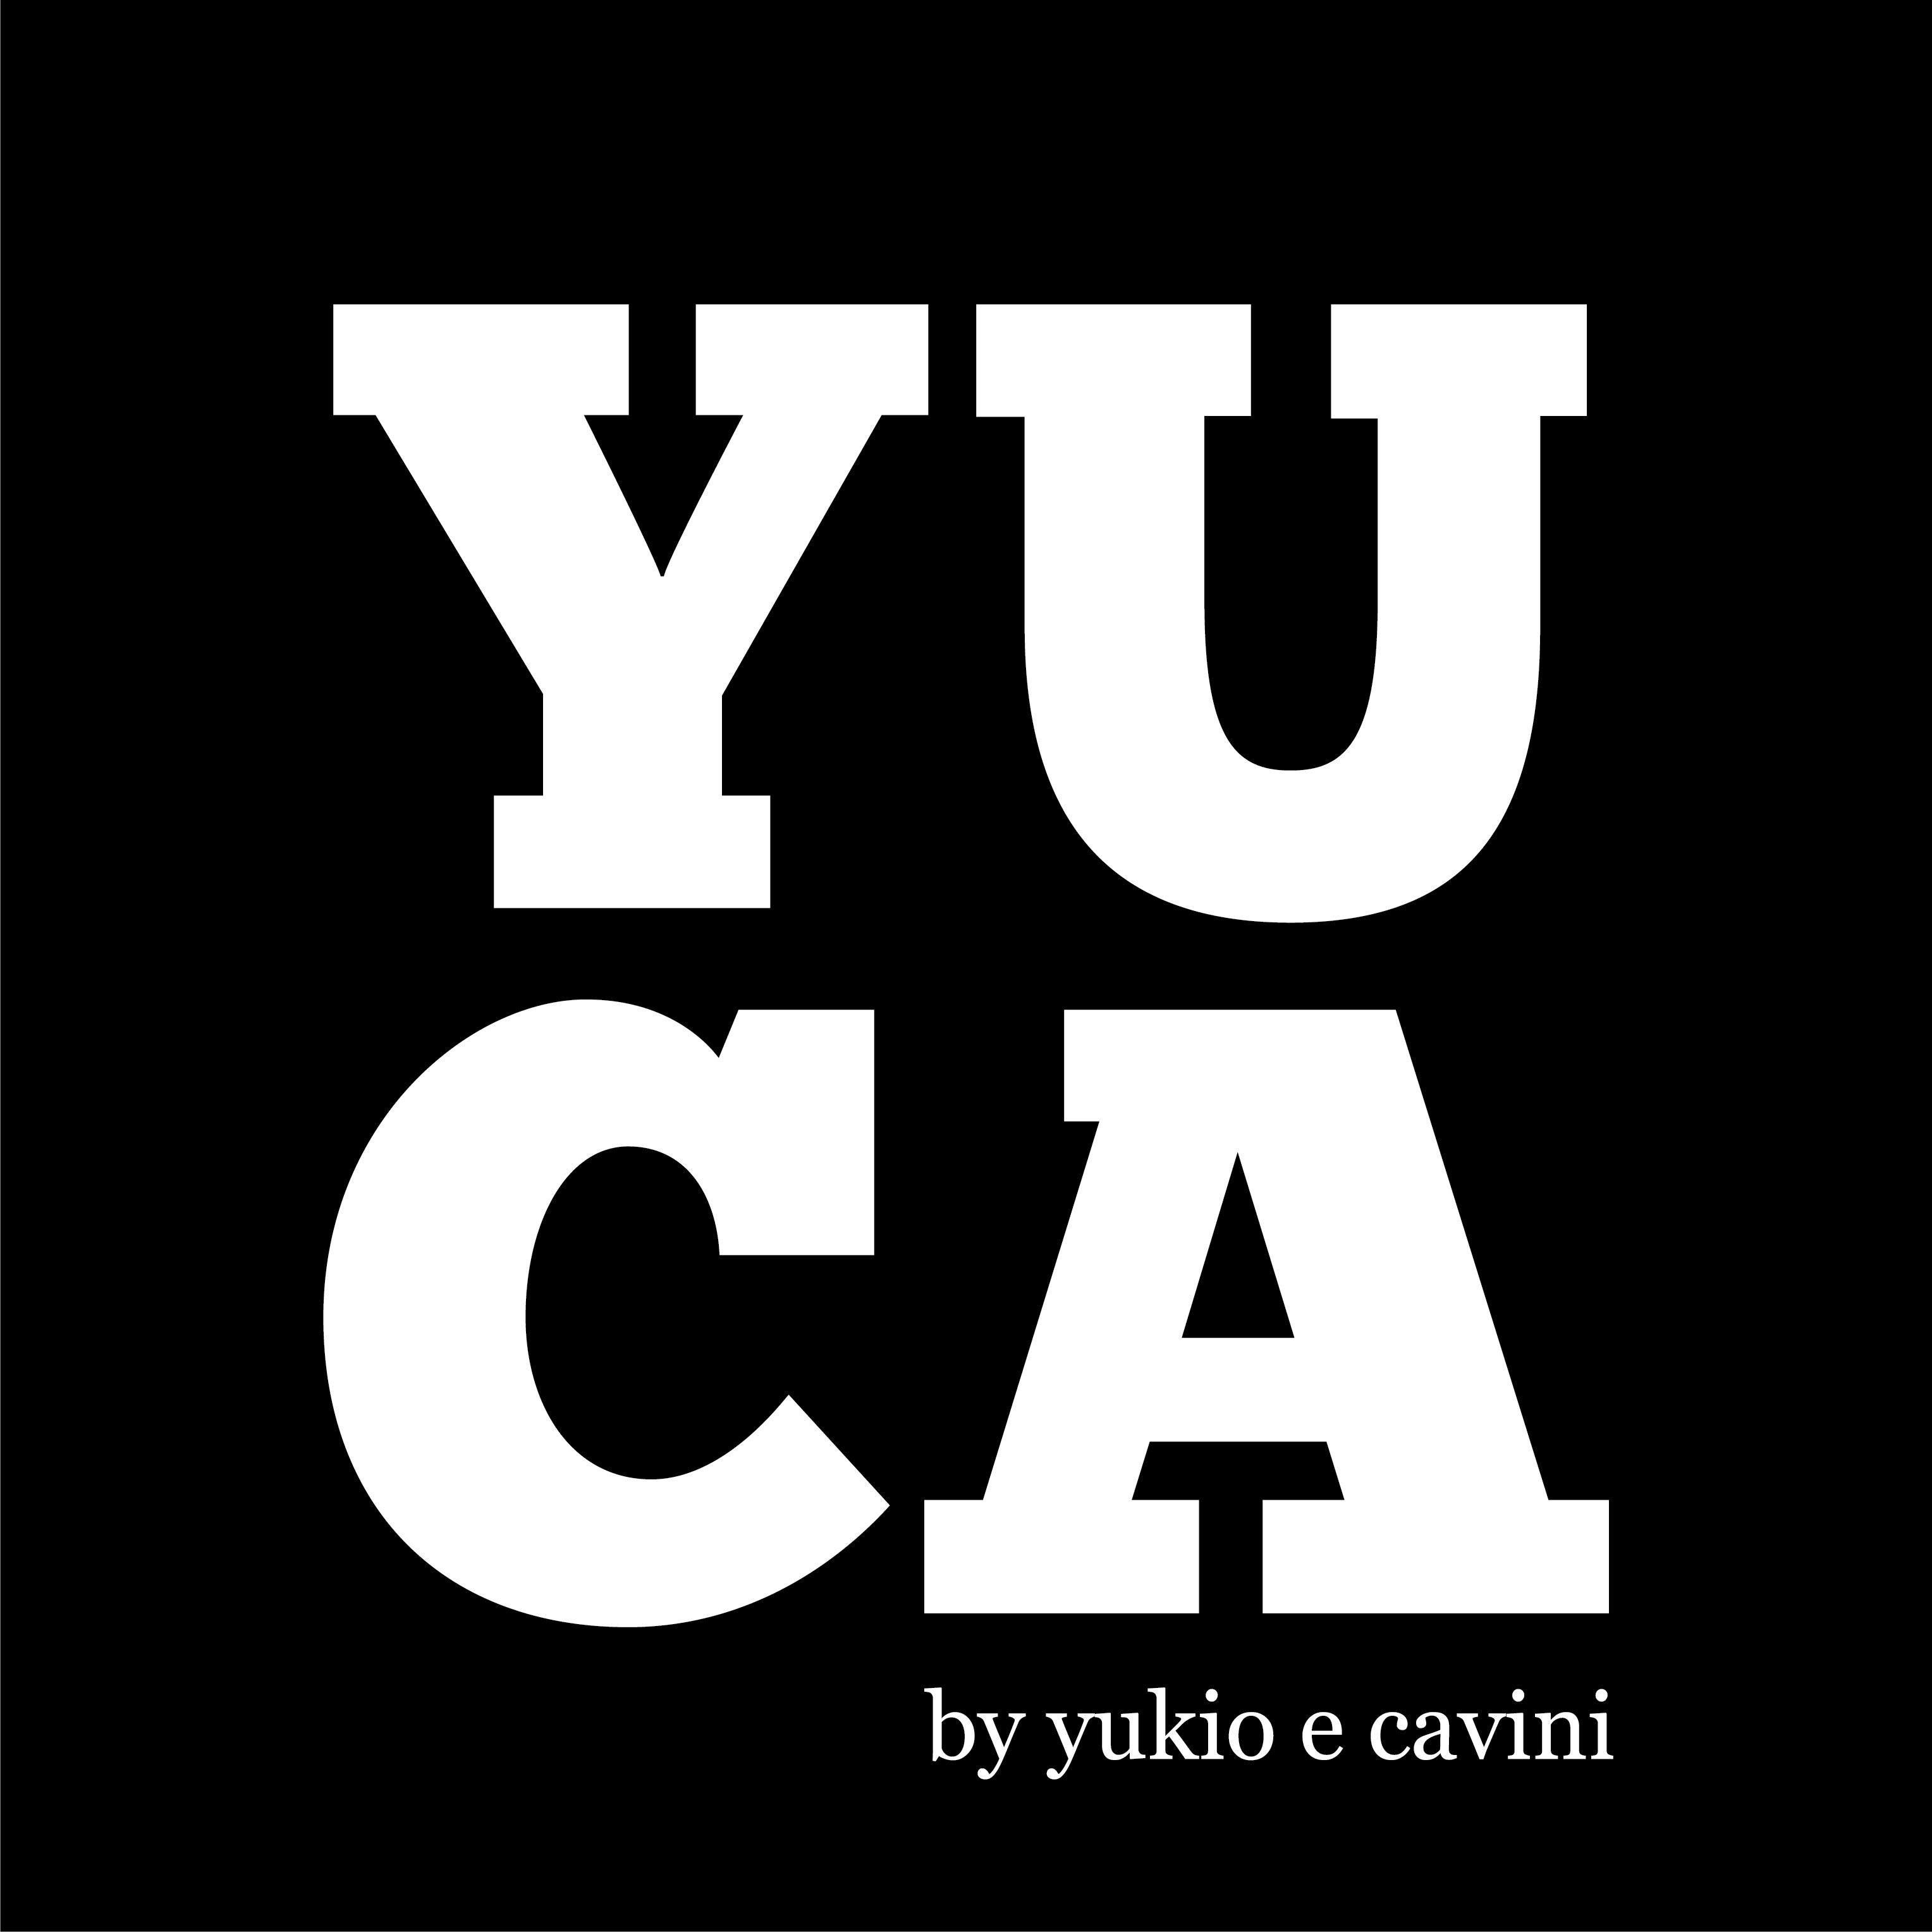 Logotipo da empresa YUCA. Trata-se de um logo na forma de um quadrado na cor preto, com as palavras “YUCA” escritas dentro desse quadrado.